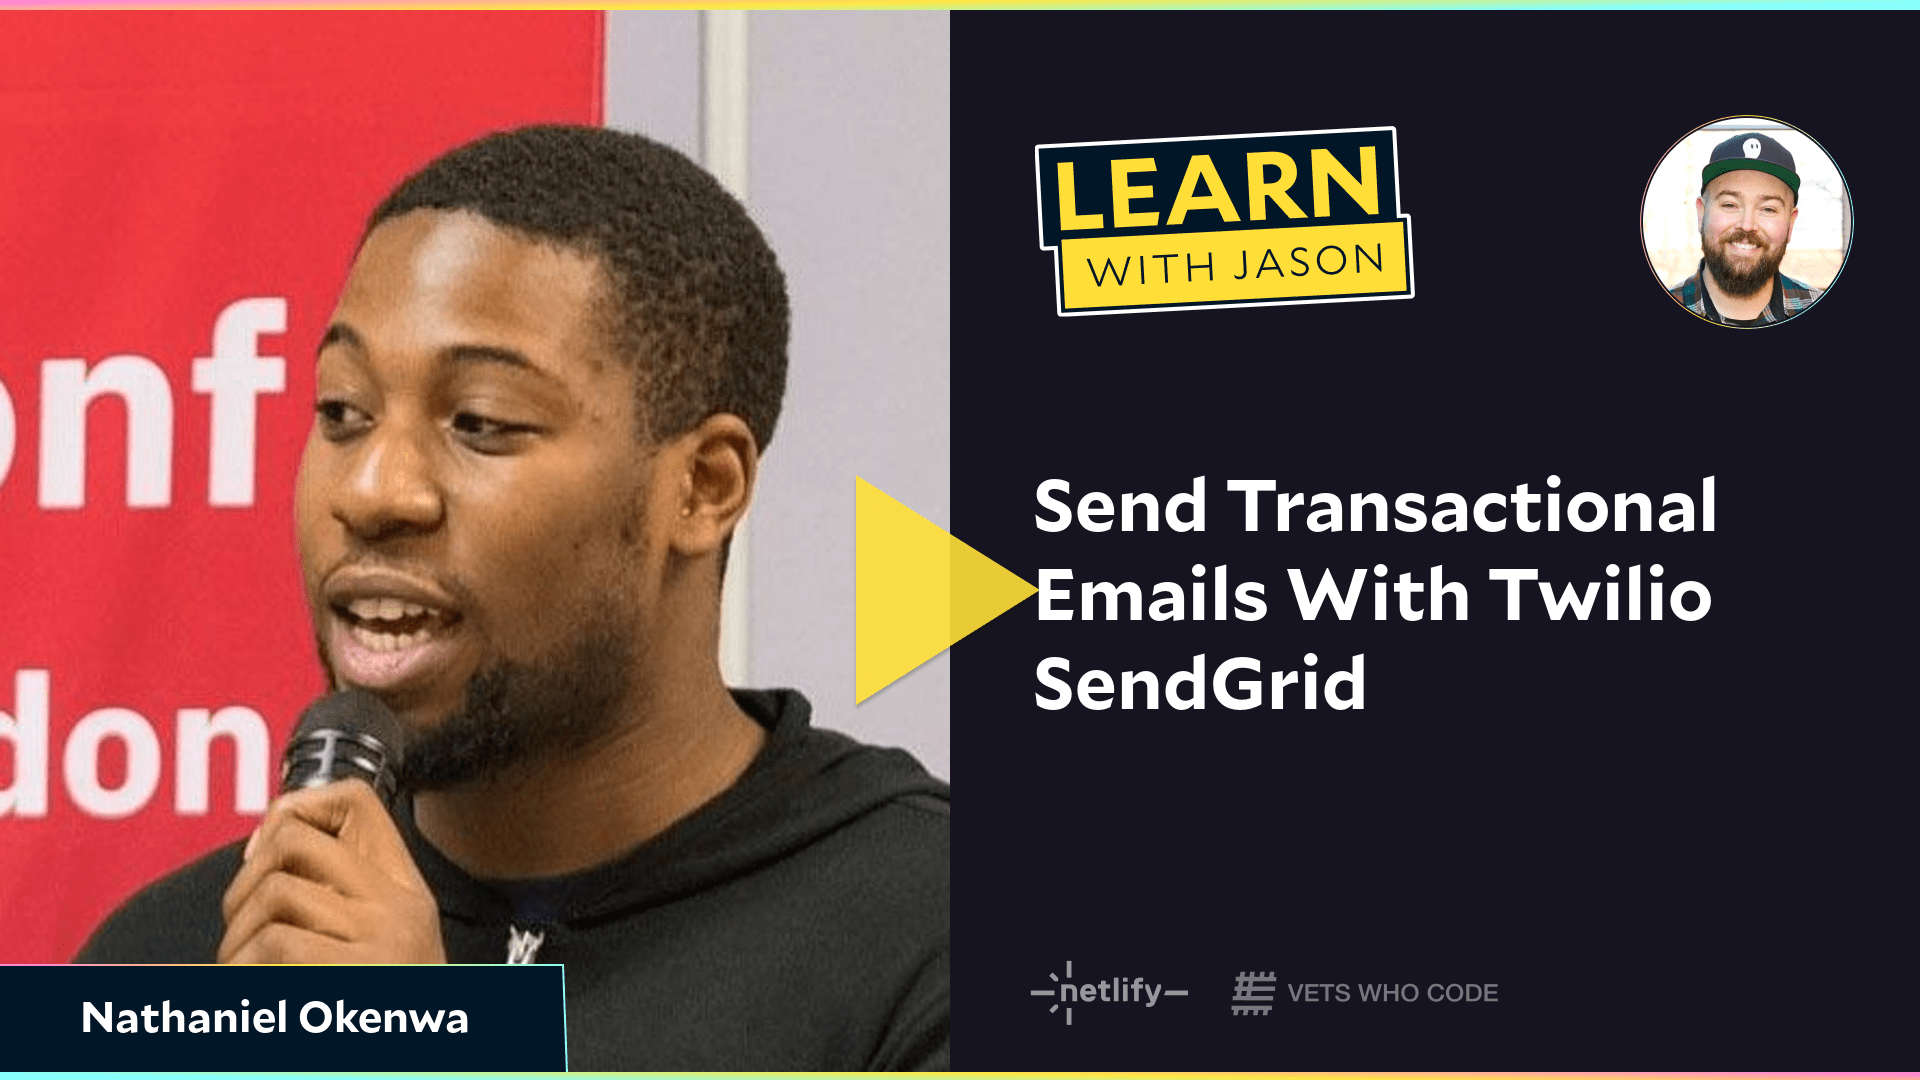 Send Transactional Emails With Twilio SendGrid (with Nathaniel Okenwa)